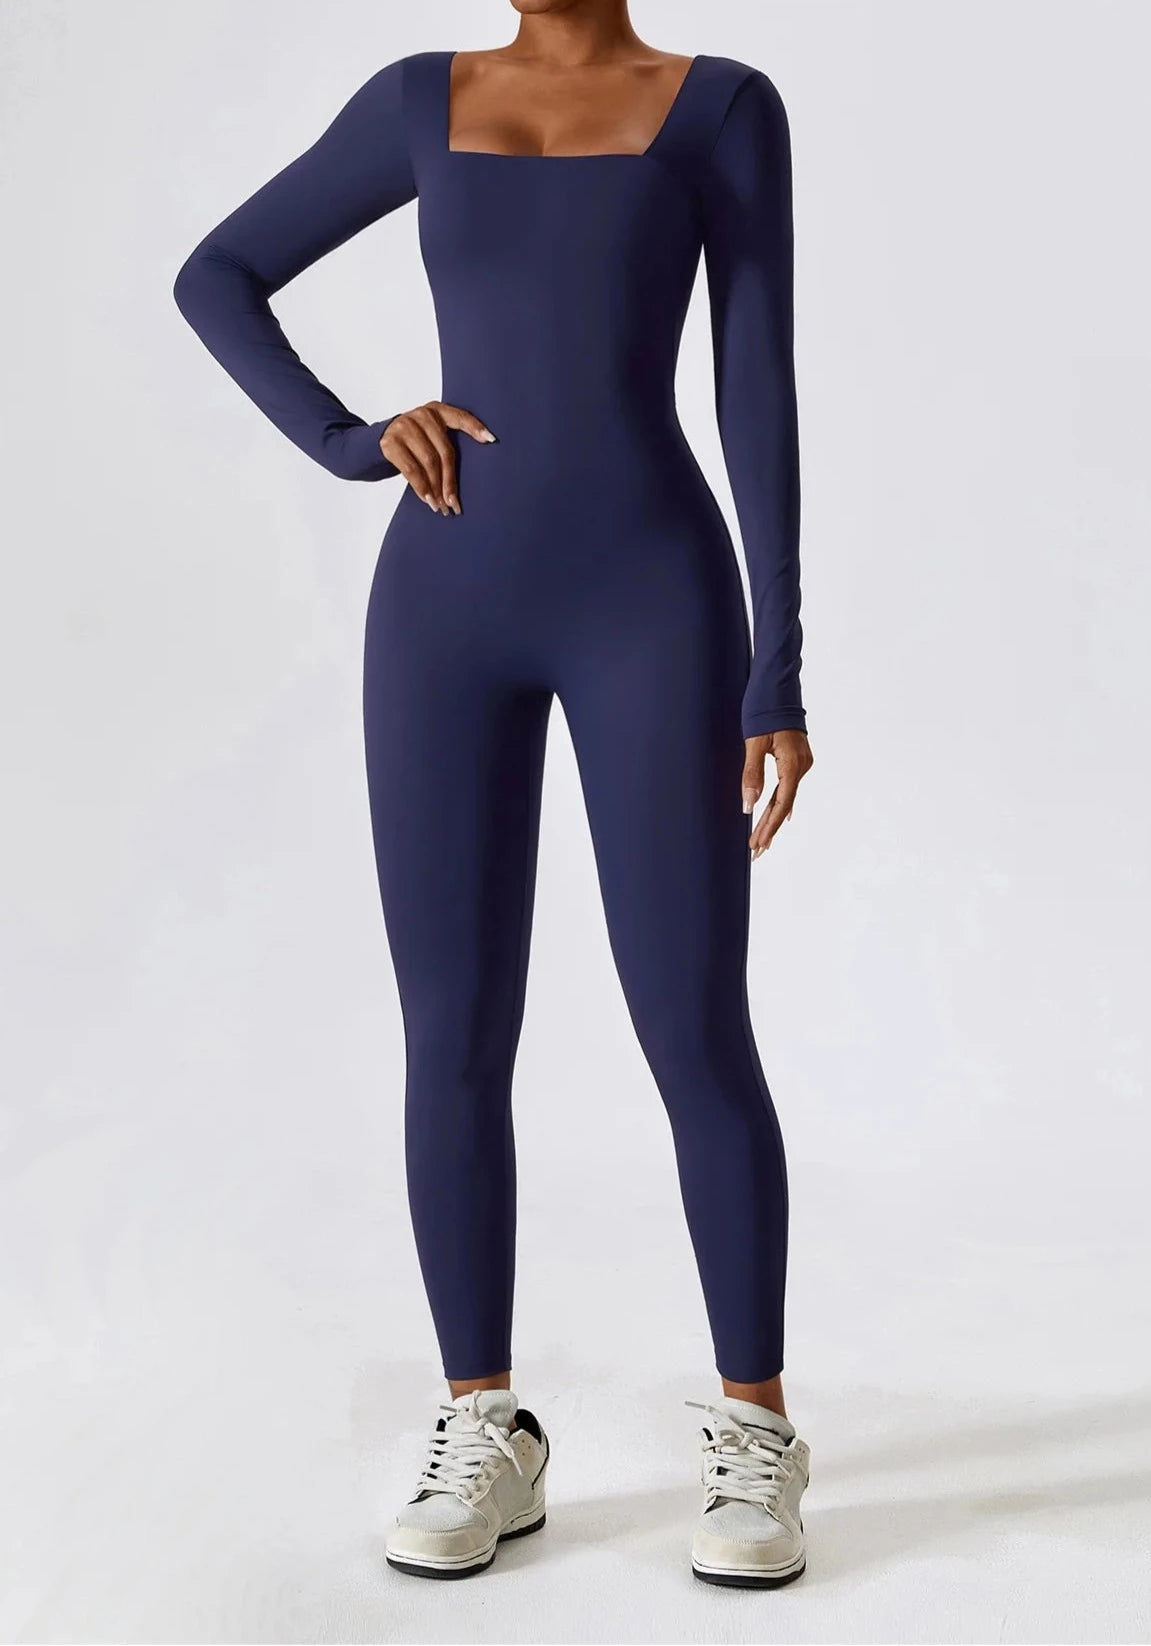 Flex Form Winter Jumpsuit Jumpsuit Starlethics Eclipse Blue S 